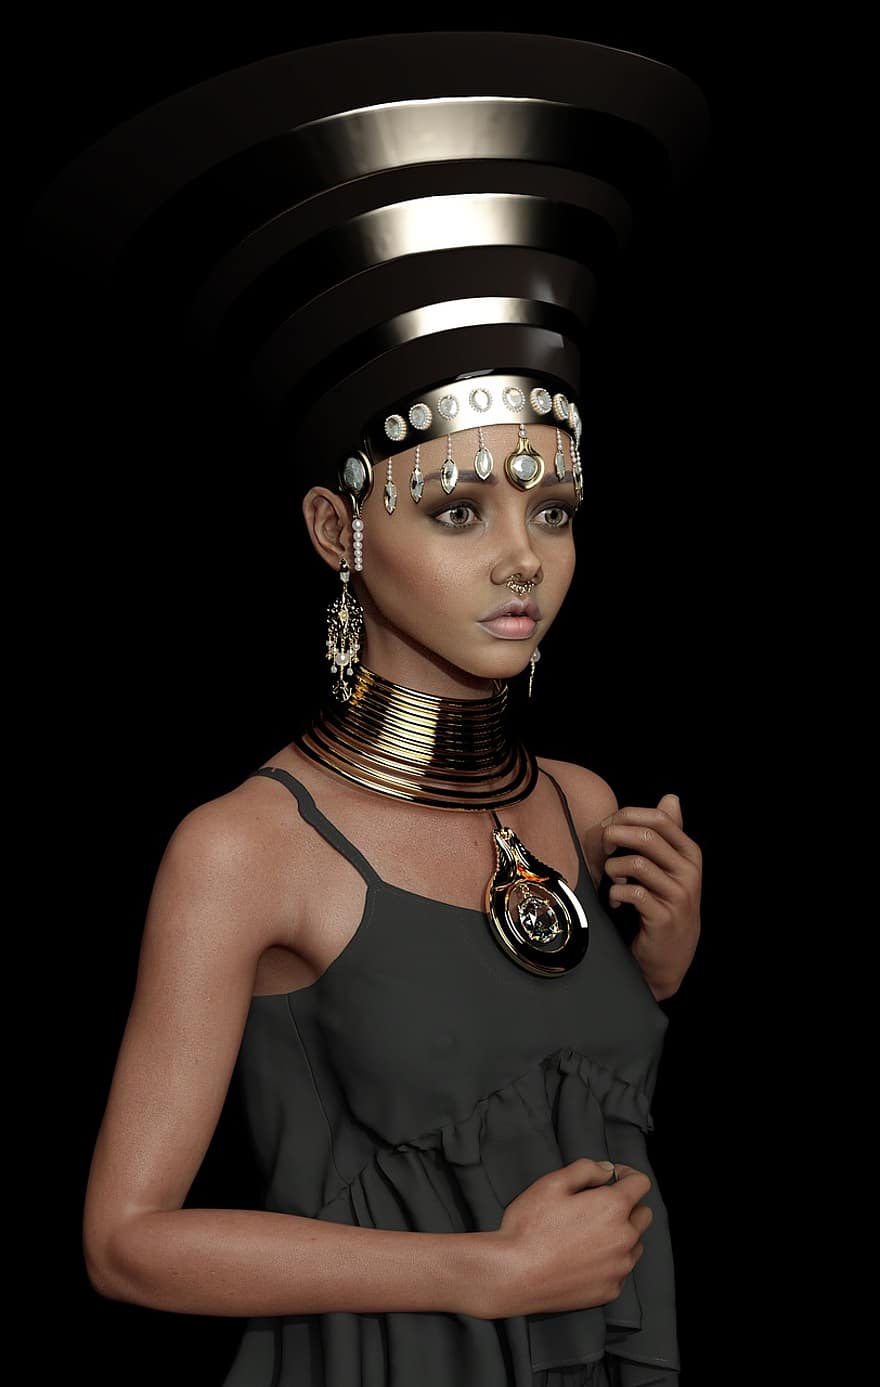 žena, egyptský, čelenka, fantazie, cosplay, čepice, oblečení, šperky, portrét, krása, póza